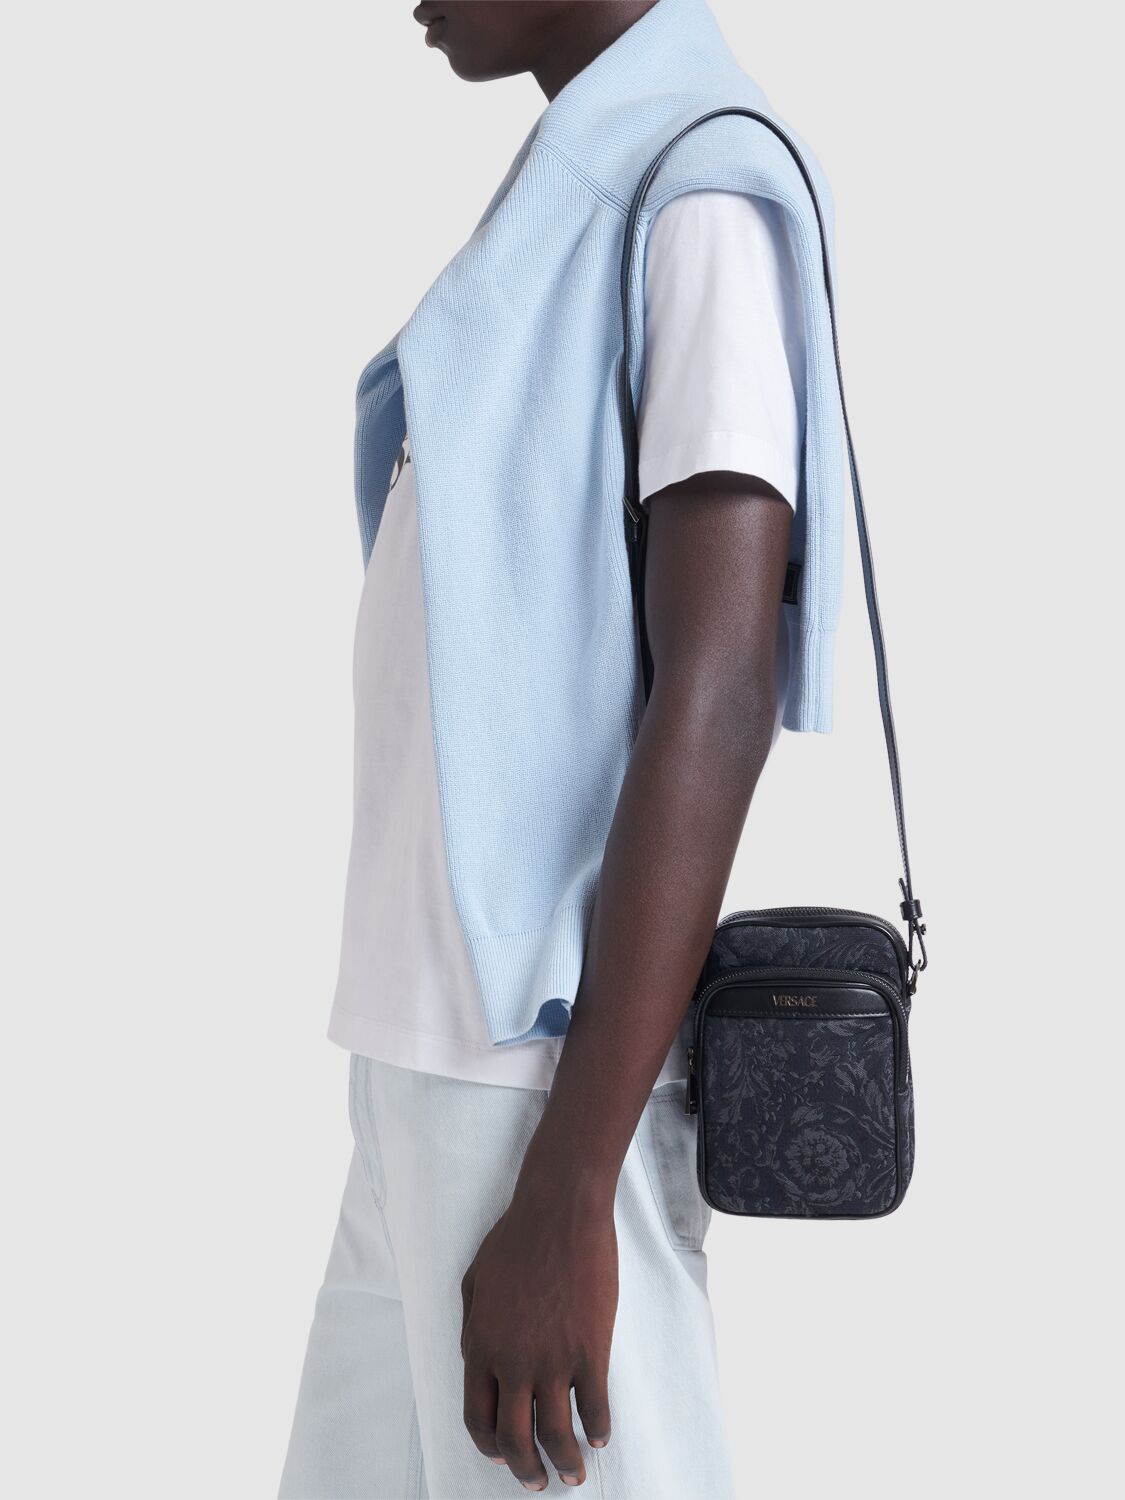 Shop Versace Barocco Jacquard Canvas Crossbody Bag In Black